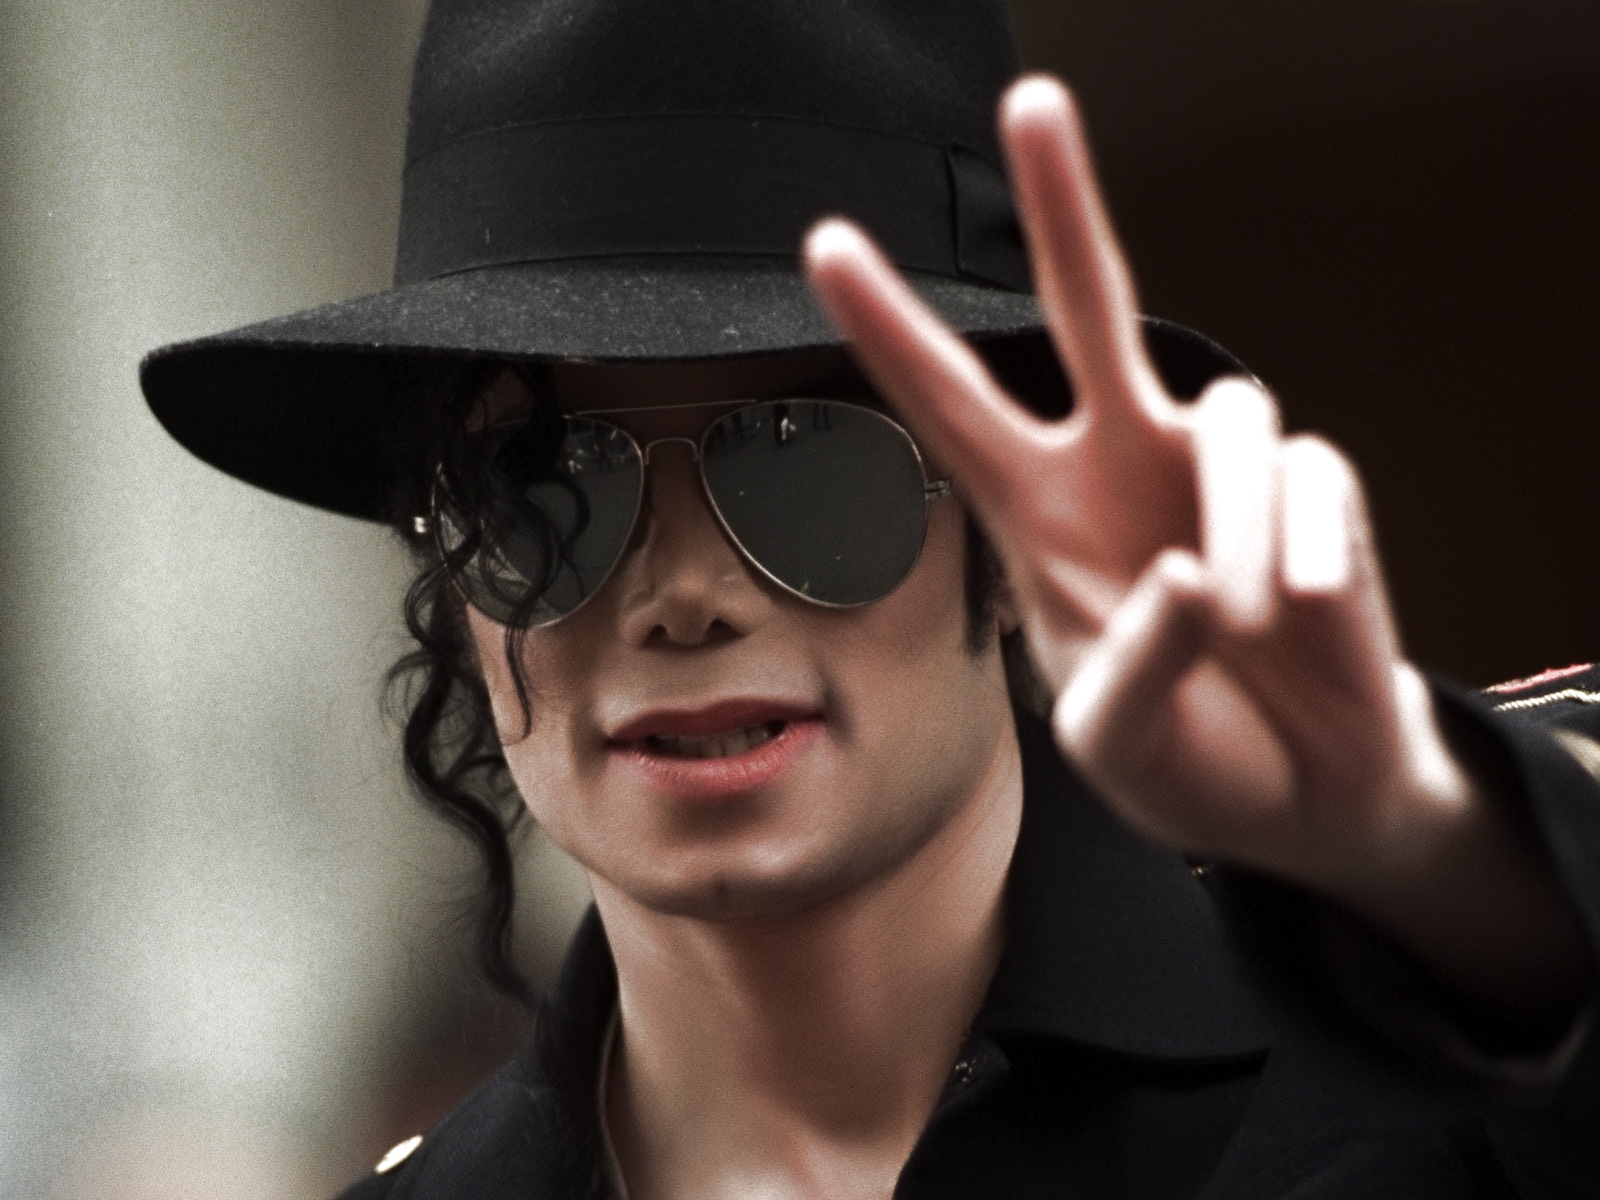 Familia de Michael Jackson asegura que el cantante nunca abusó de los niños (VIDEO)